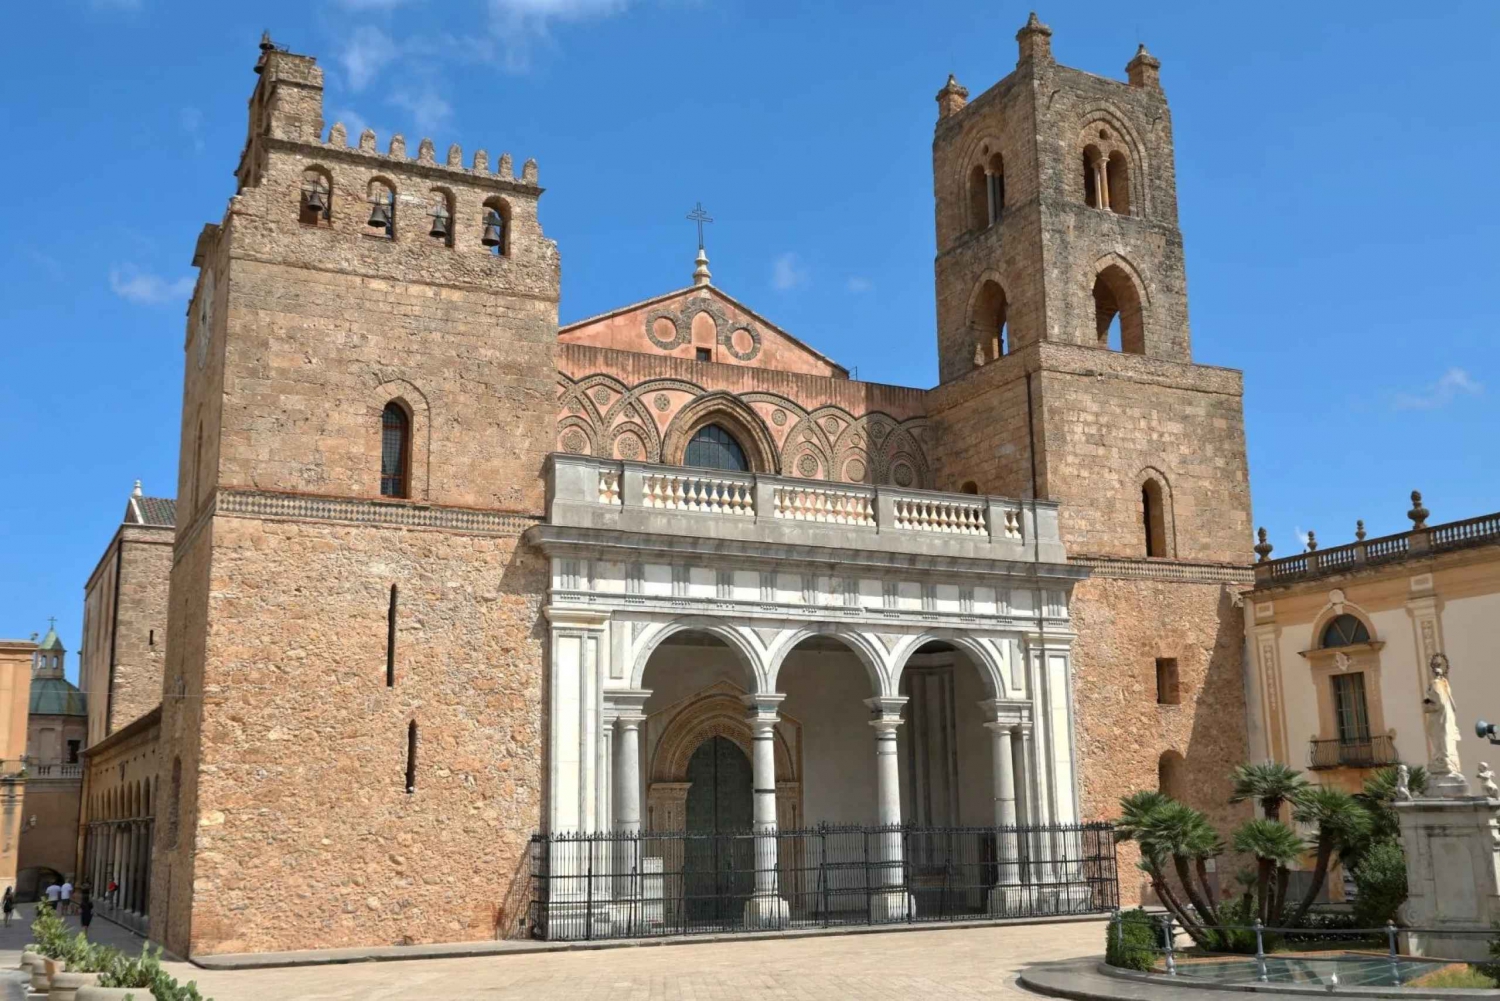 Palermo: Monreale, Catacumbas y S. Giovanni degli Eremiti